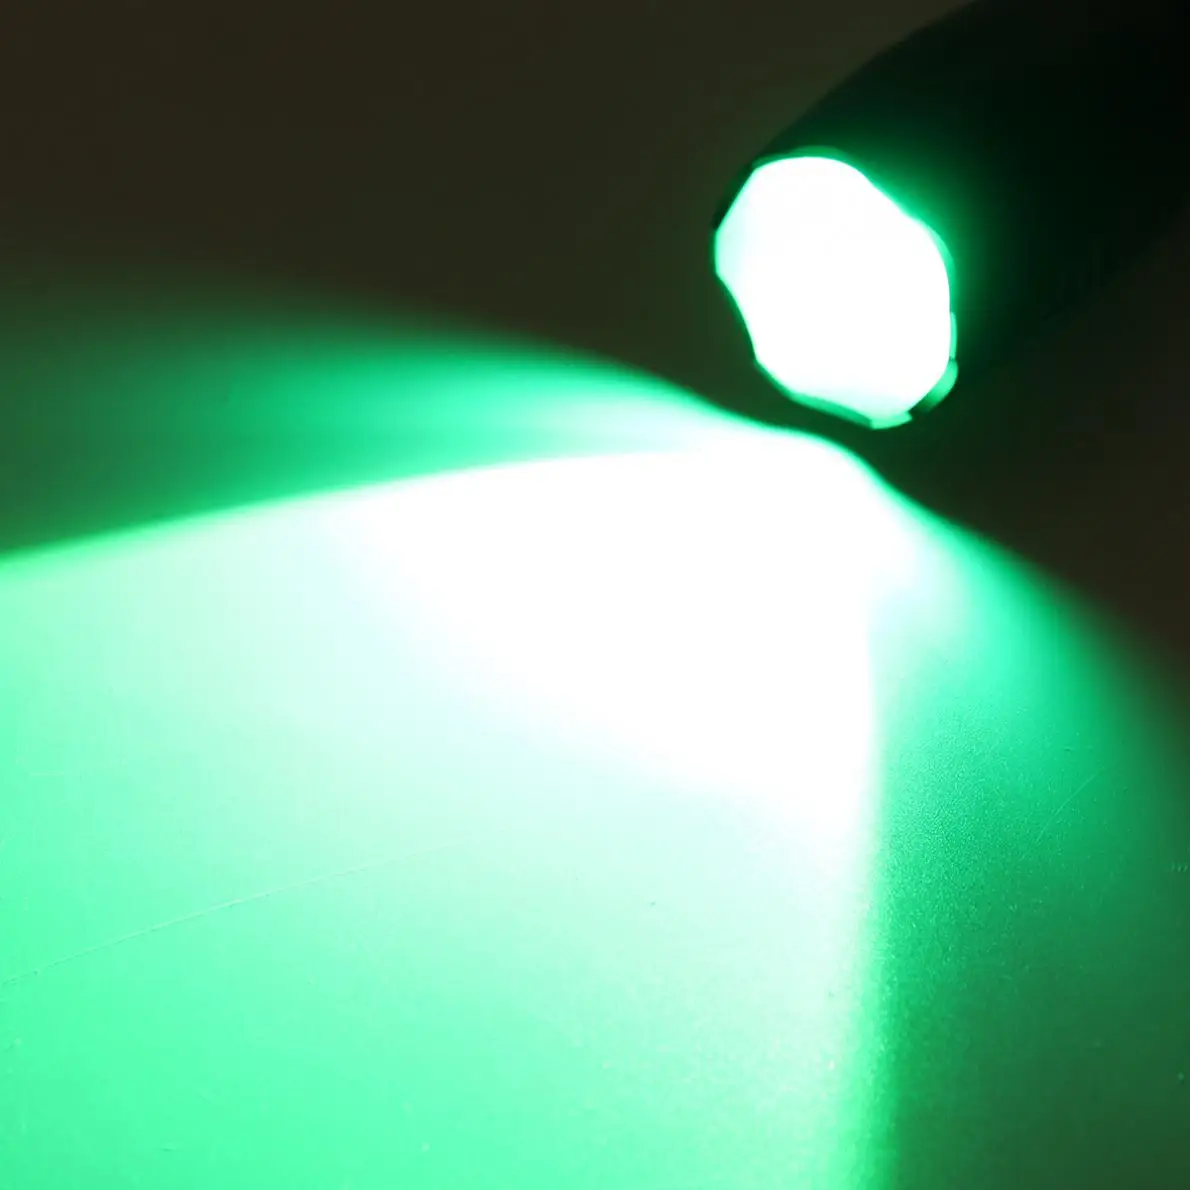 Масштабируемый флэш-светильник фонарь охотничий светильник супер яркий 5 режимов стробоскоп поддержка 18650/AAA батарея обмен линзы красный зеленый белый